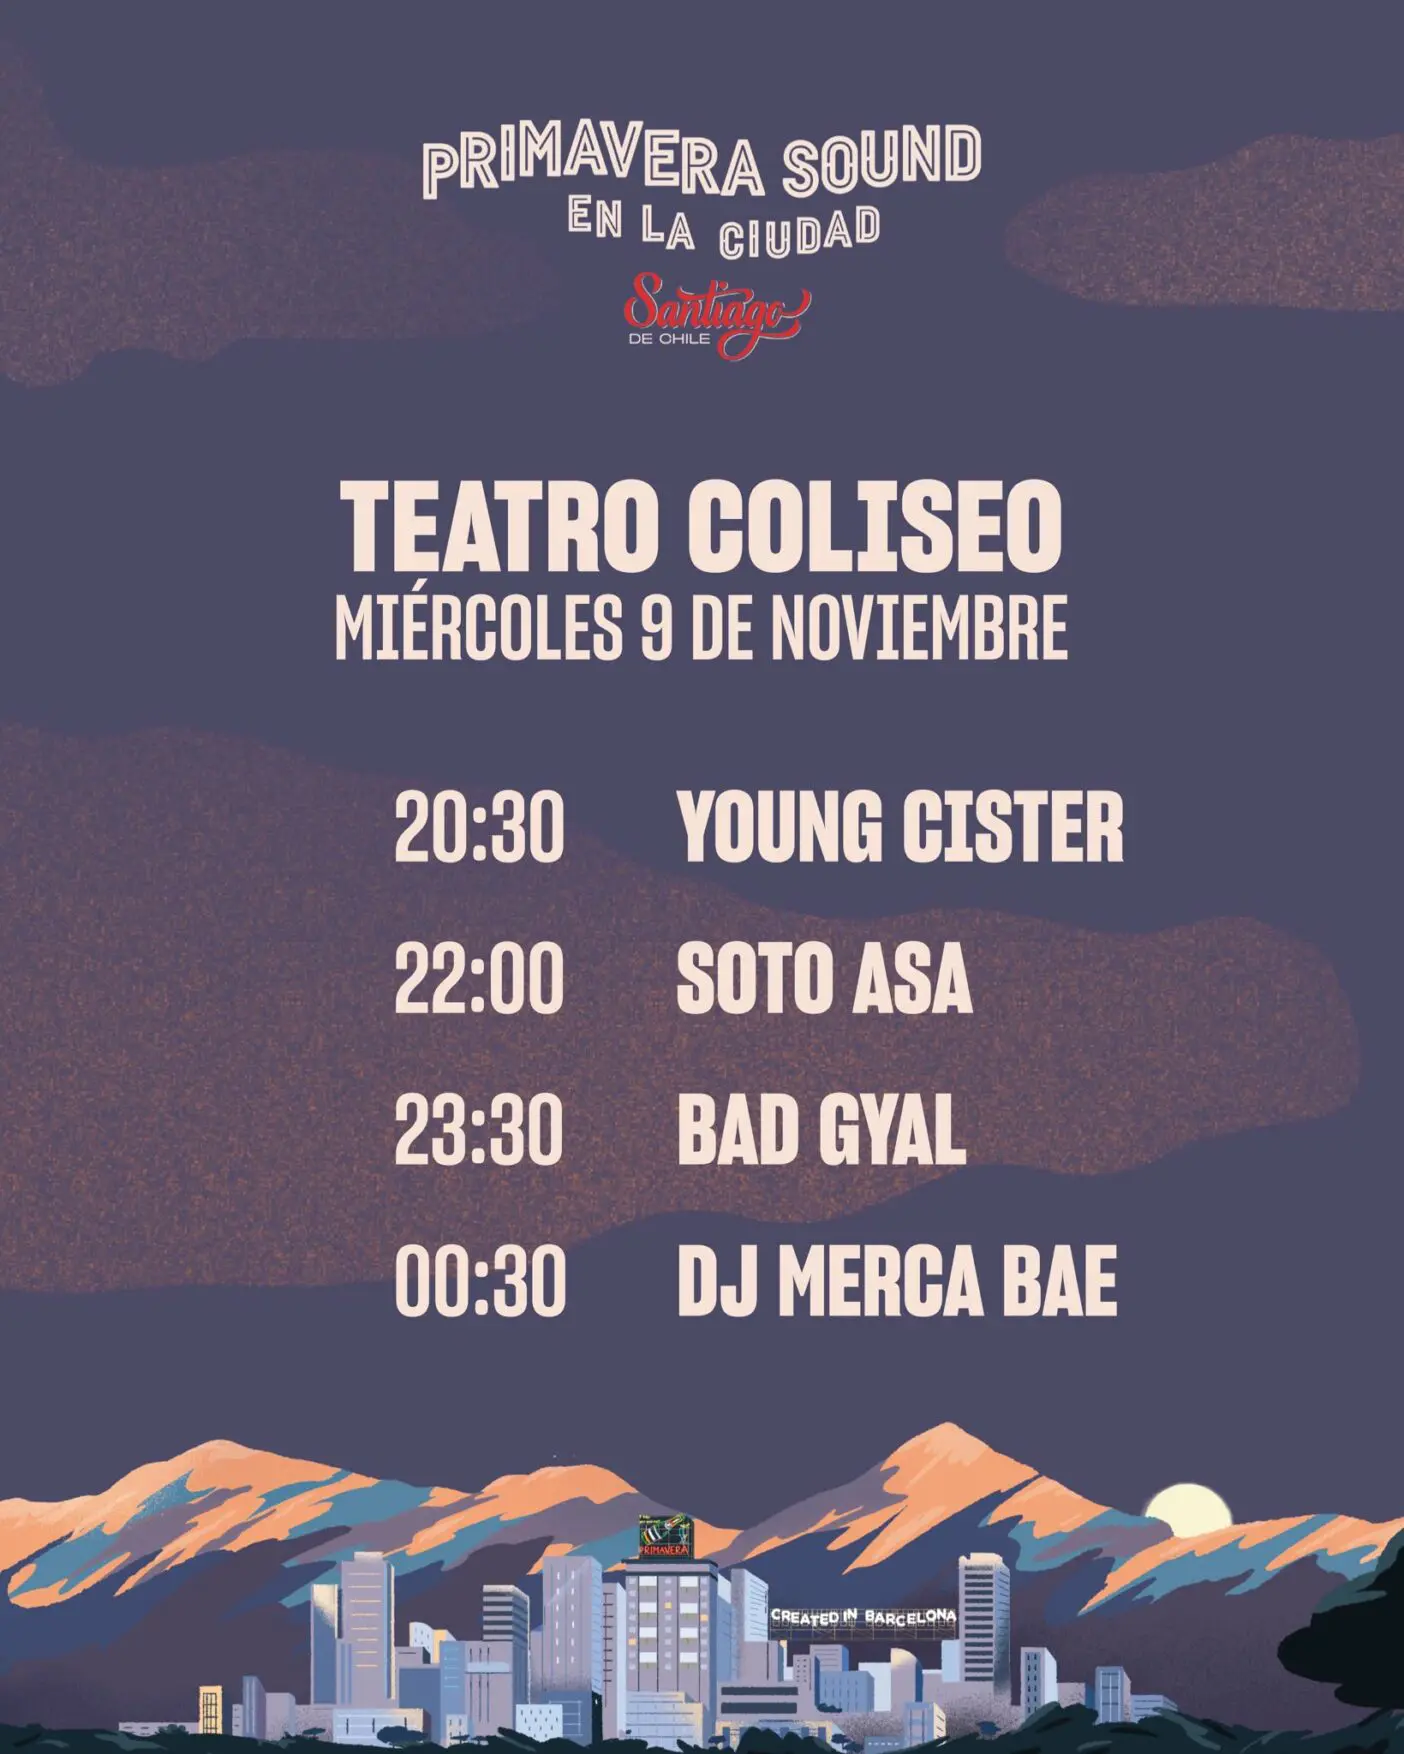 Bad Gyal en Chile, 30 de noviembre en Movistar Arena